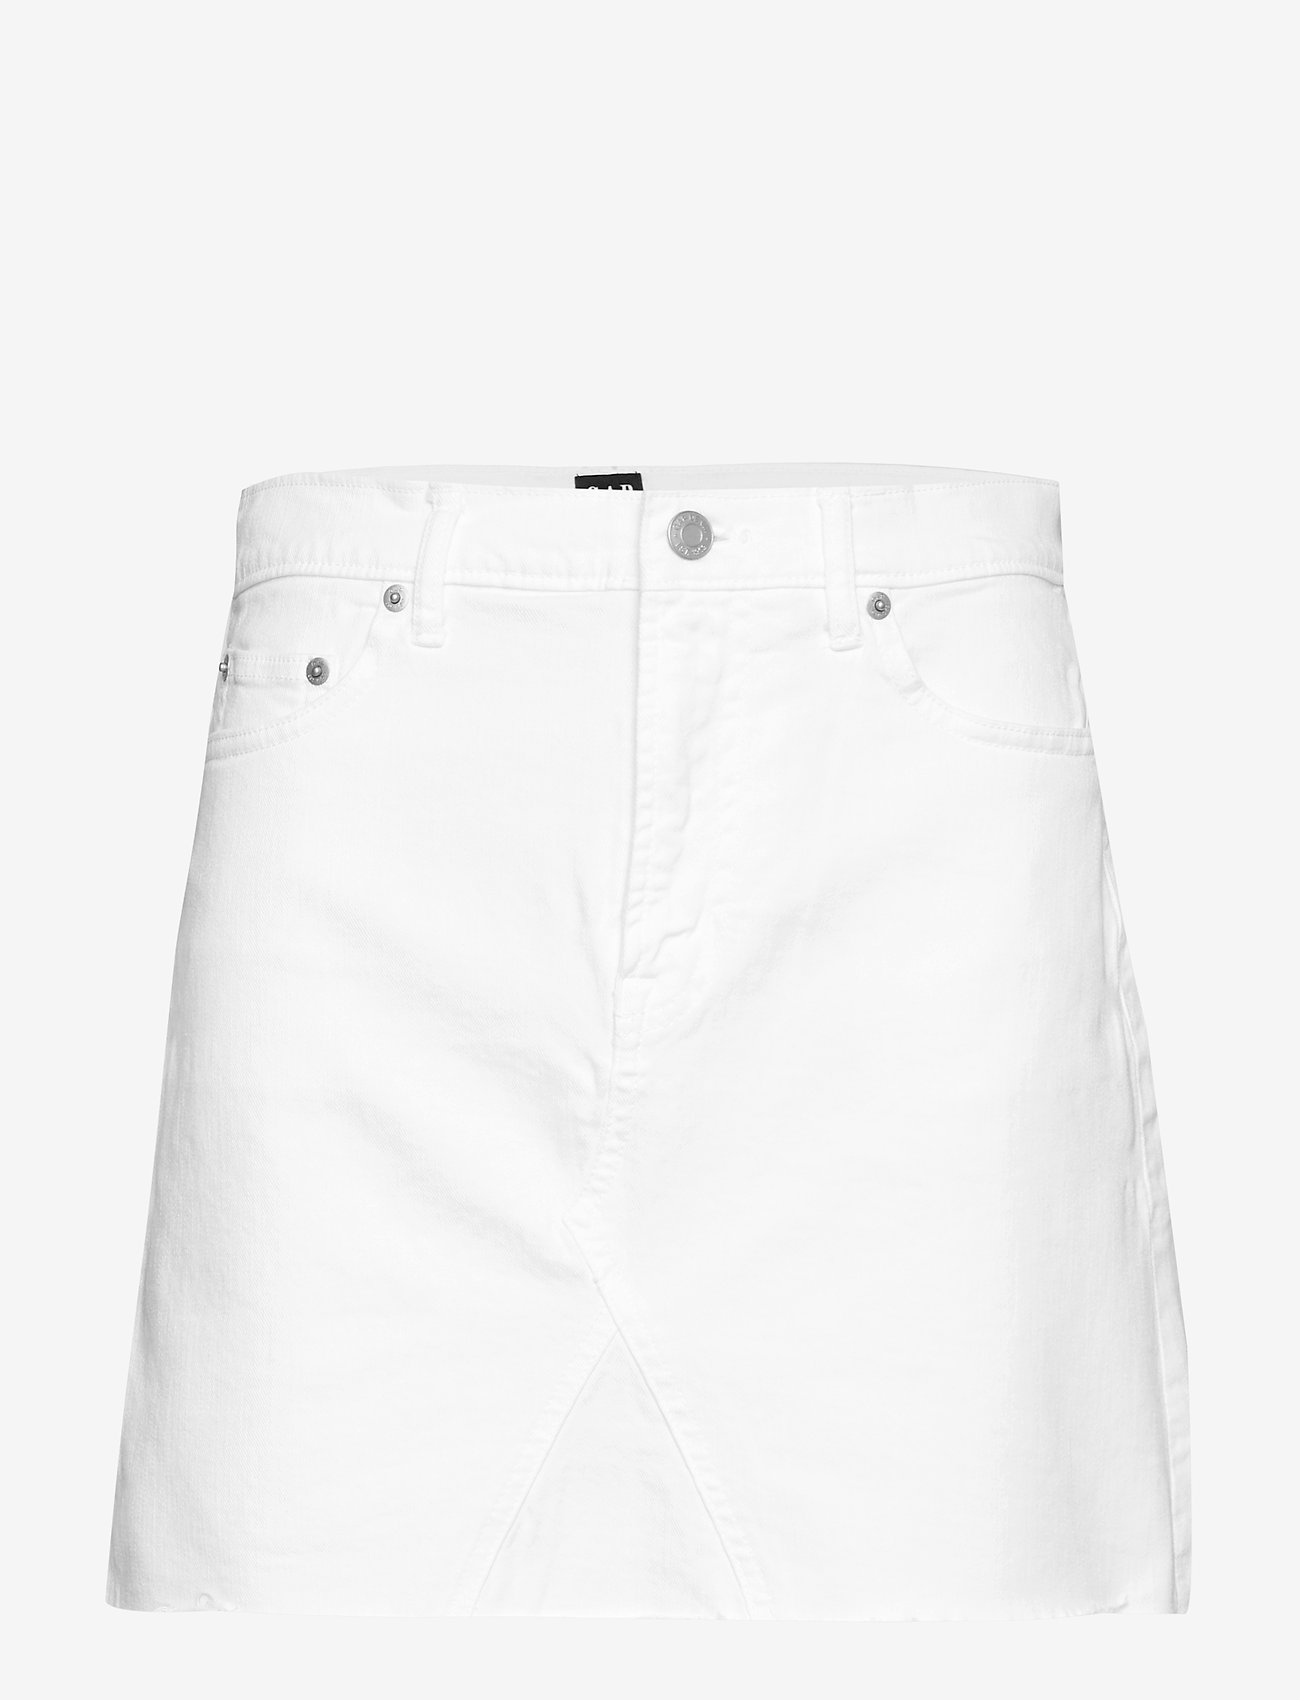 gap white jean skirt